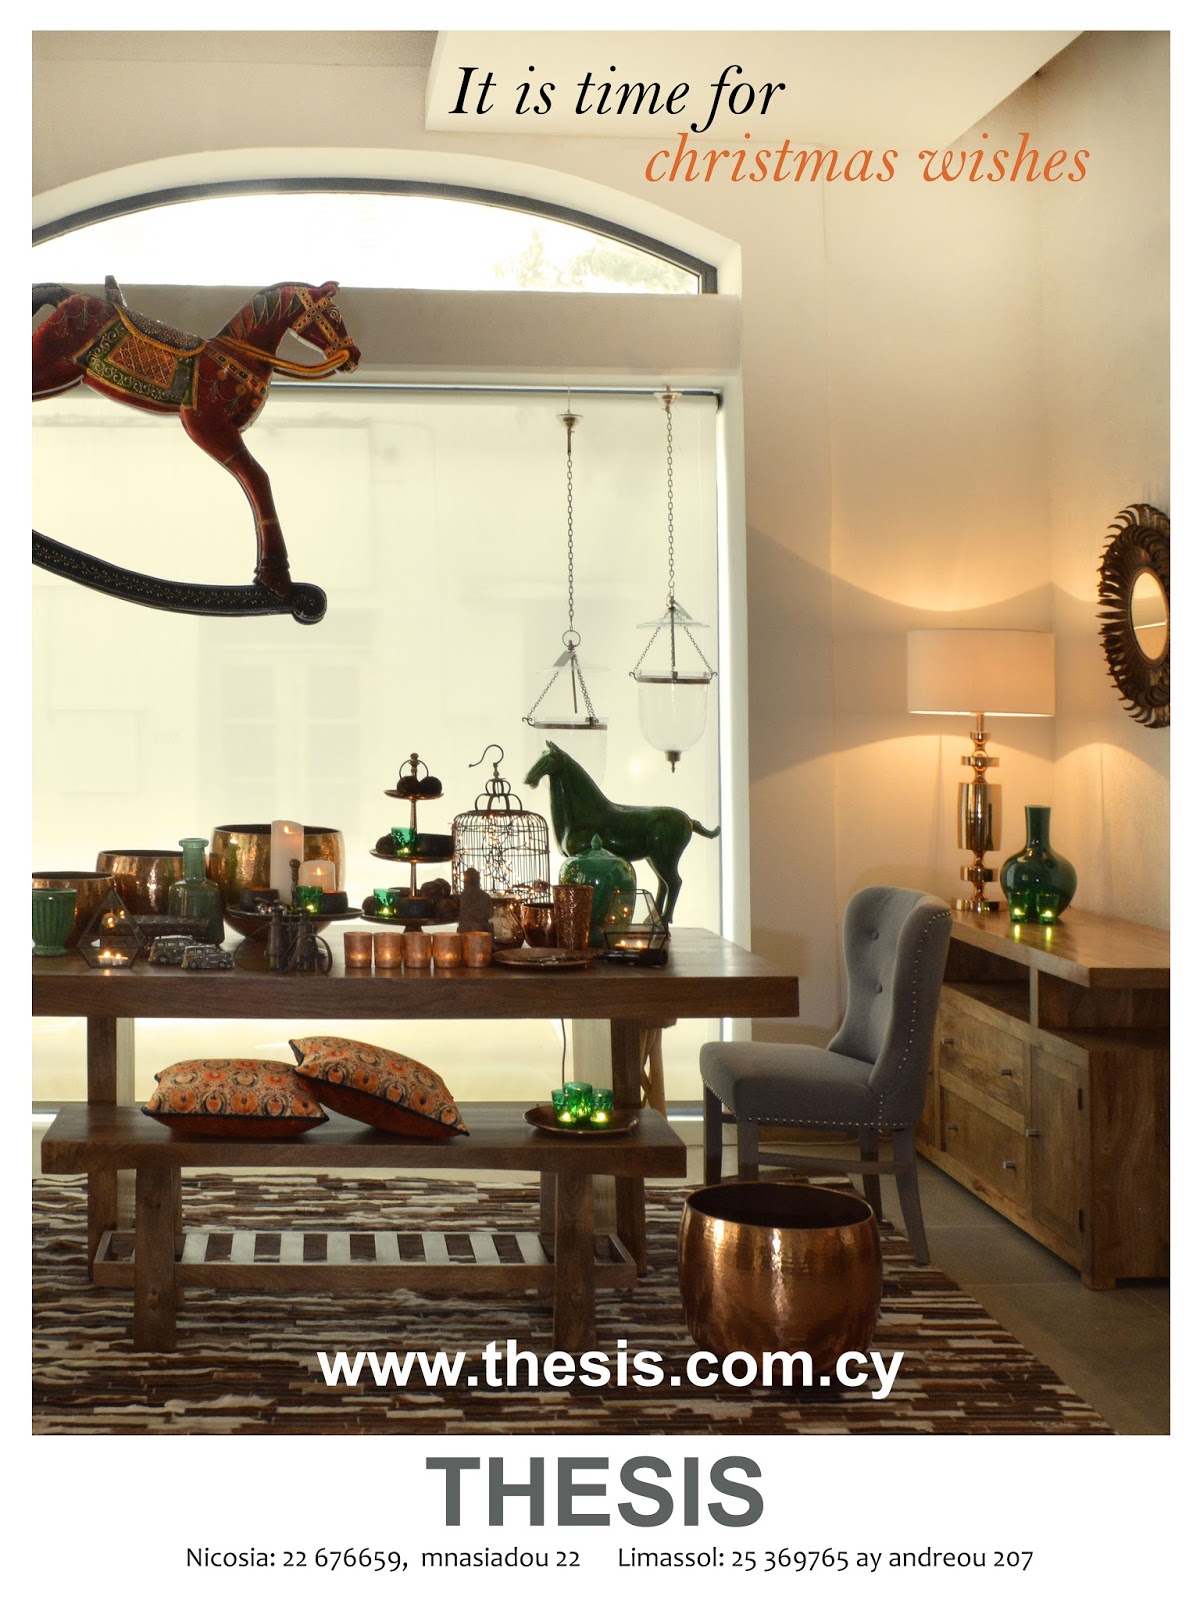 thesis furniture nicosia shop photos